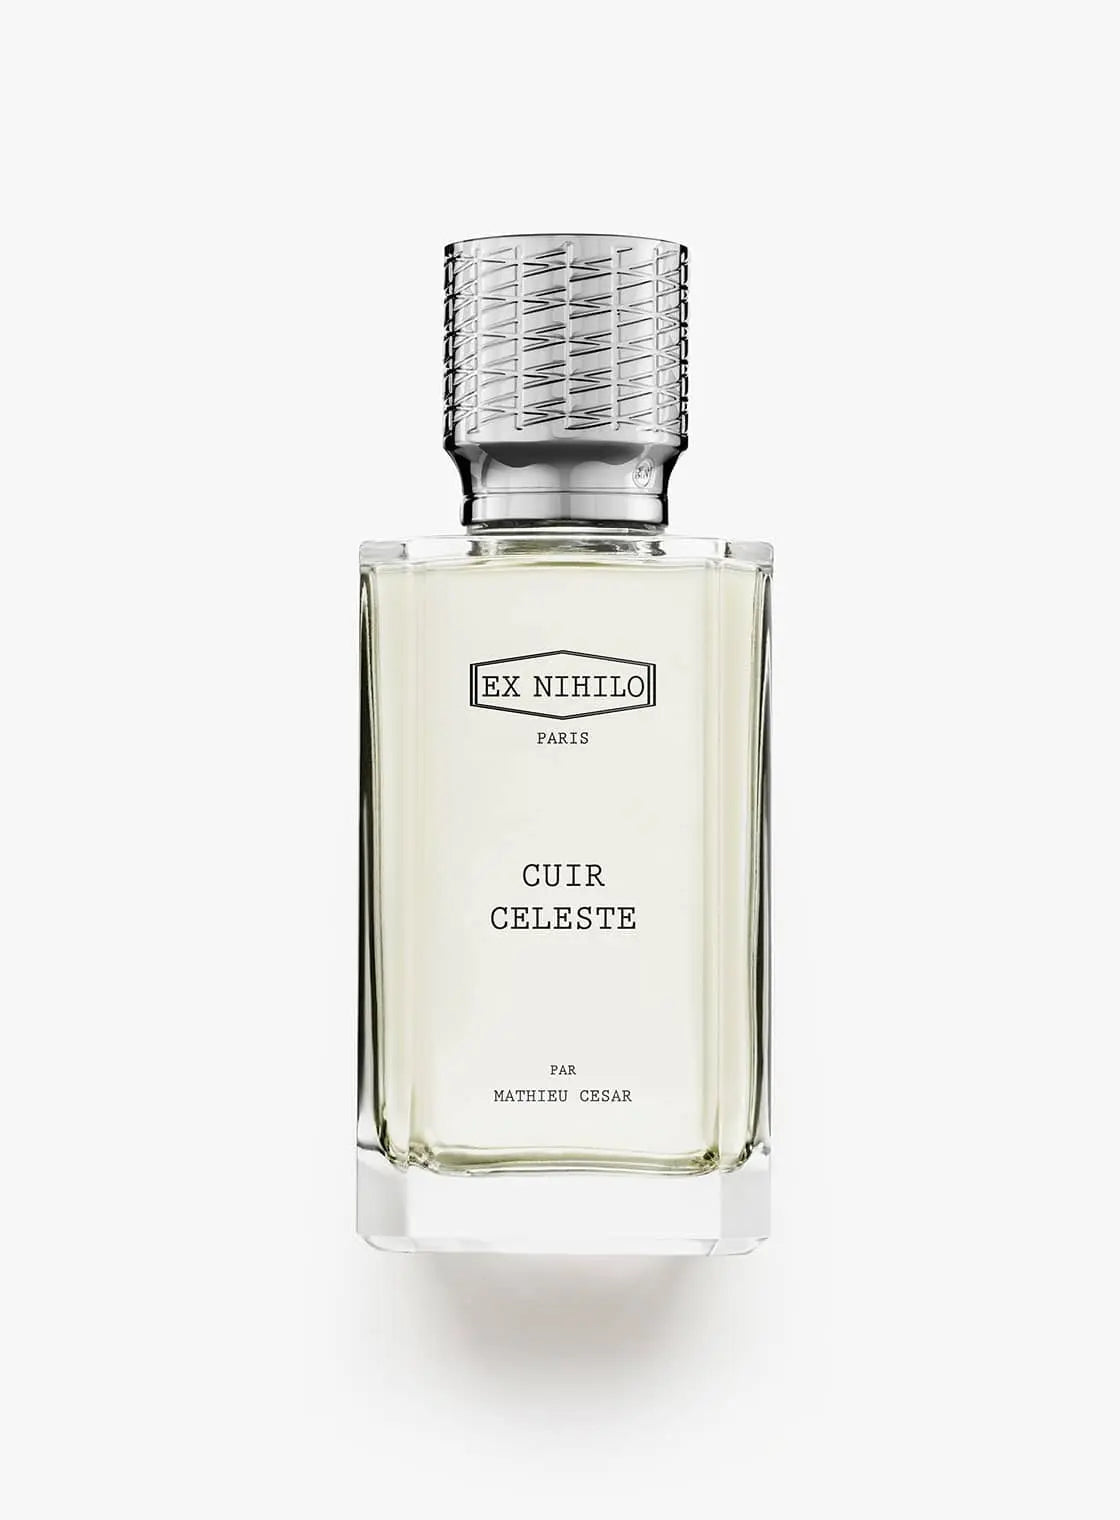 Ex nihilo Cuir Celeste Eau de Parfum - 50 ml